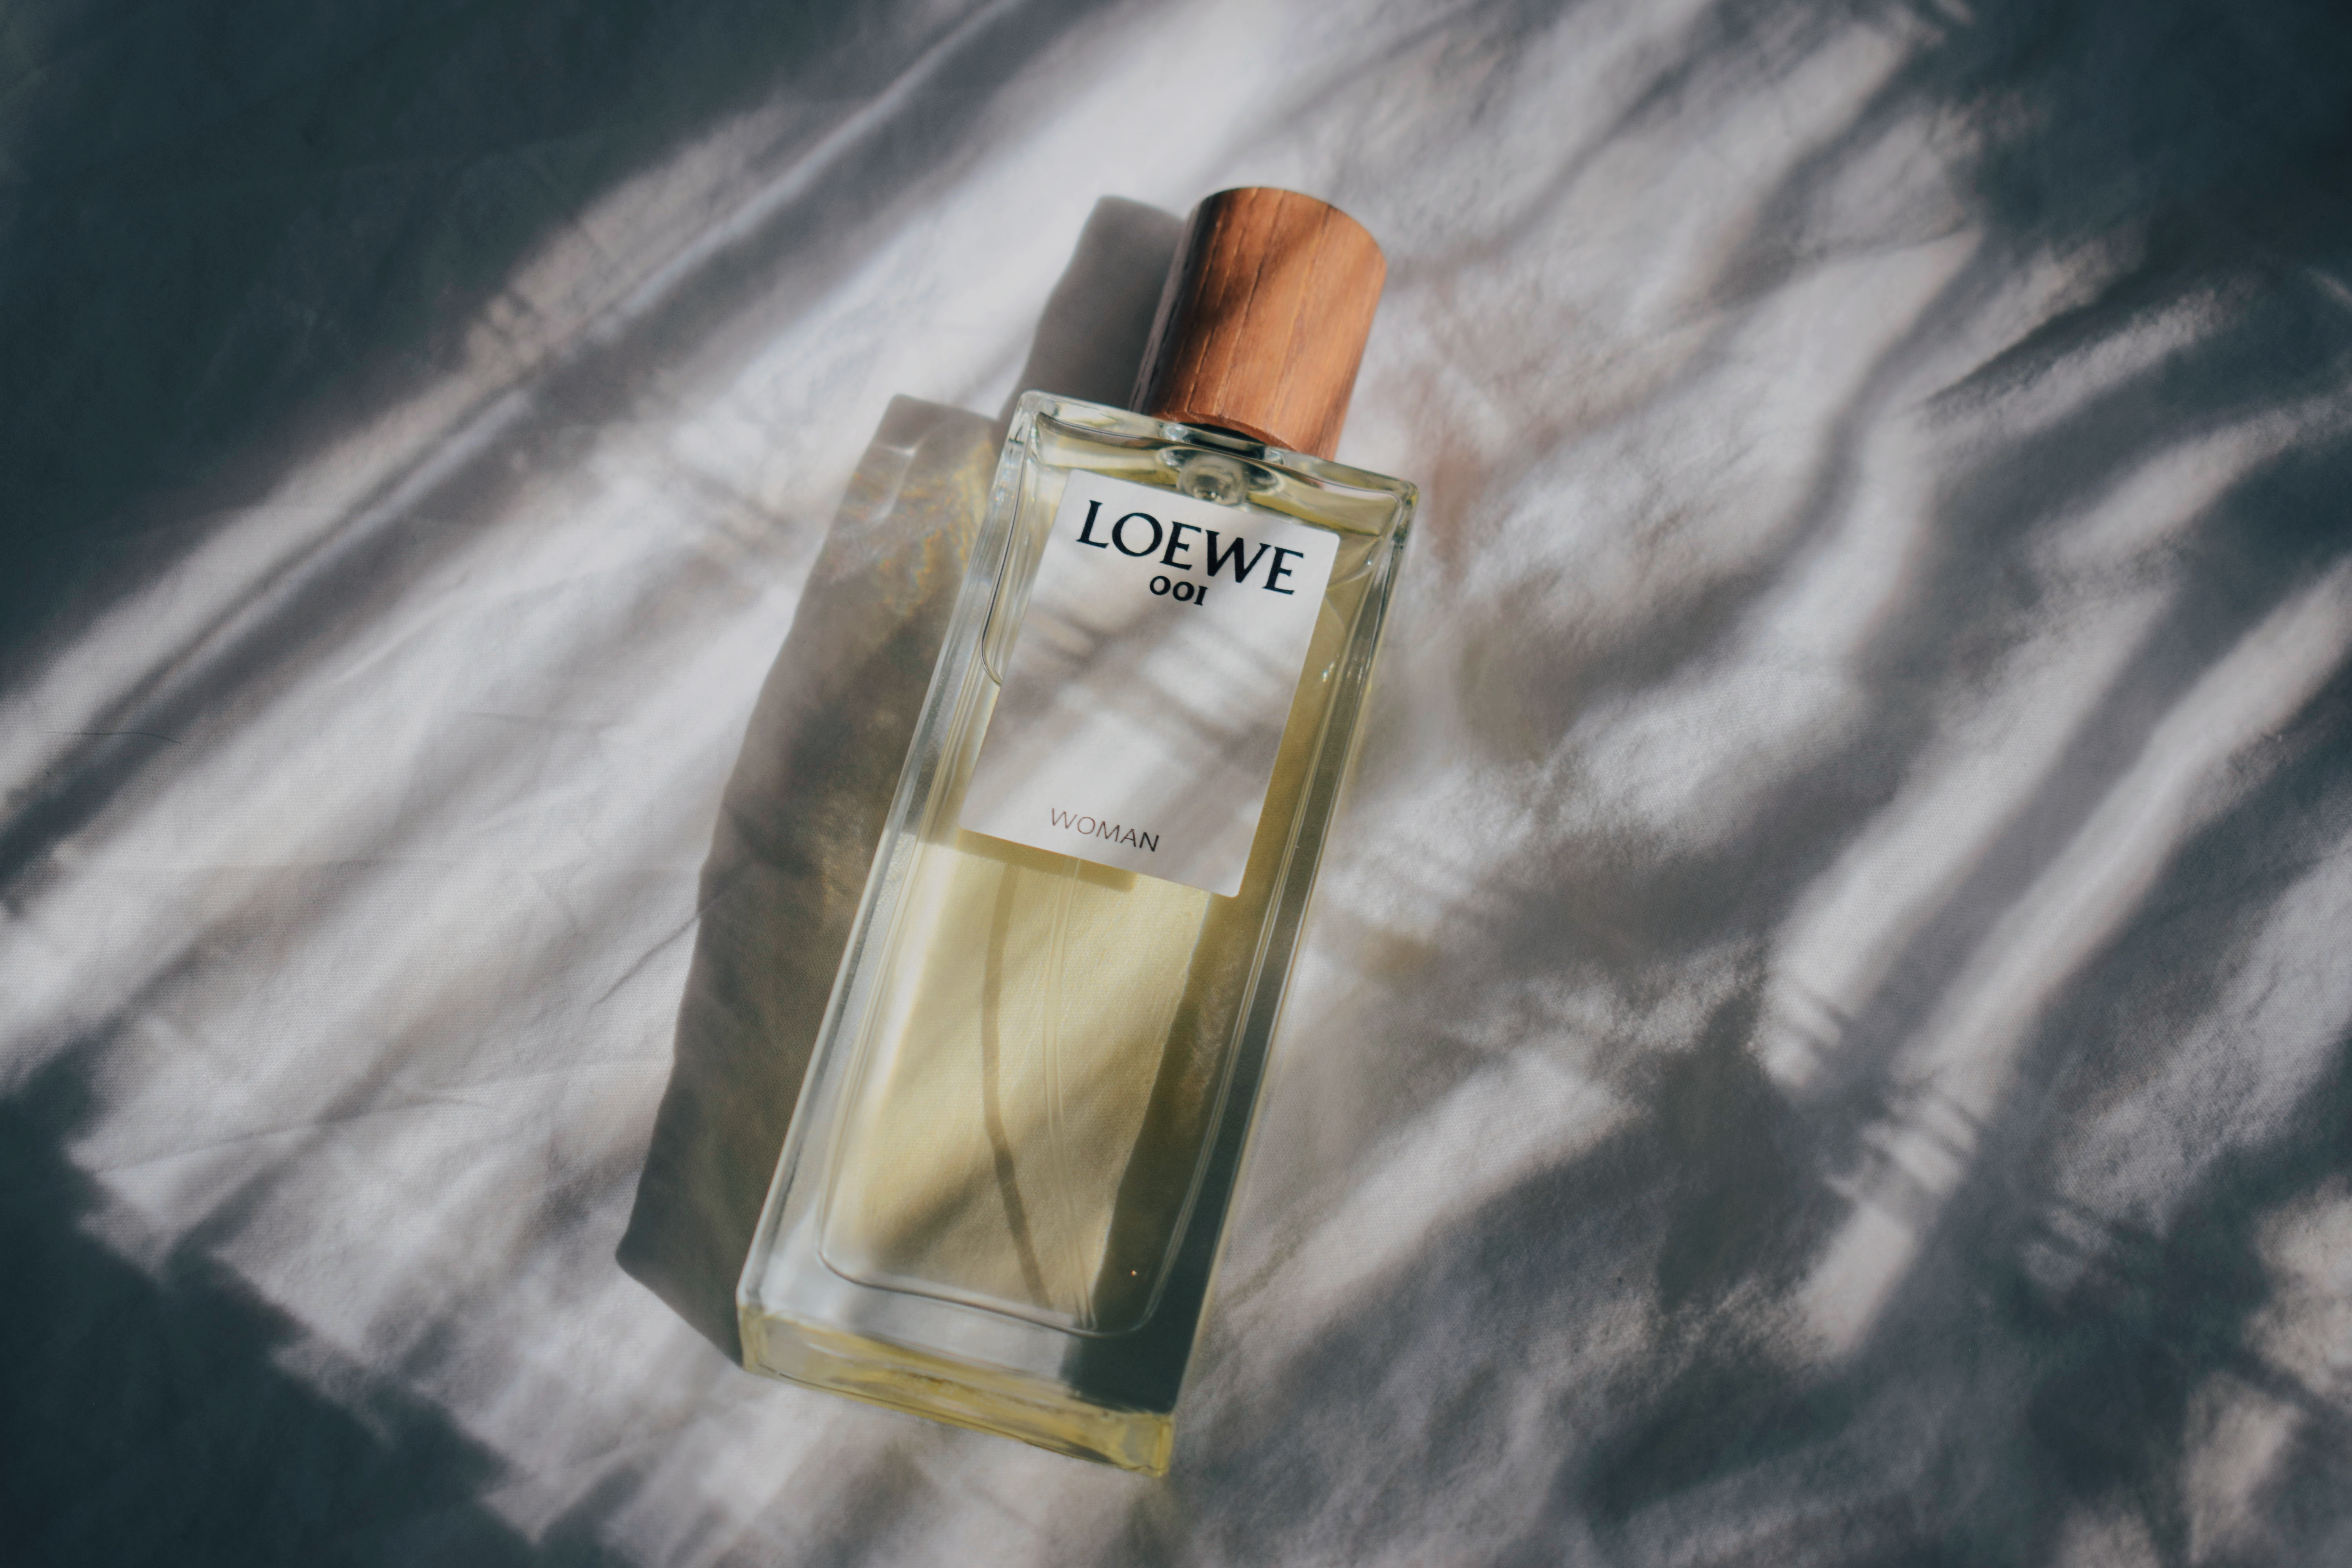 loewe 001 woman fragrantica